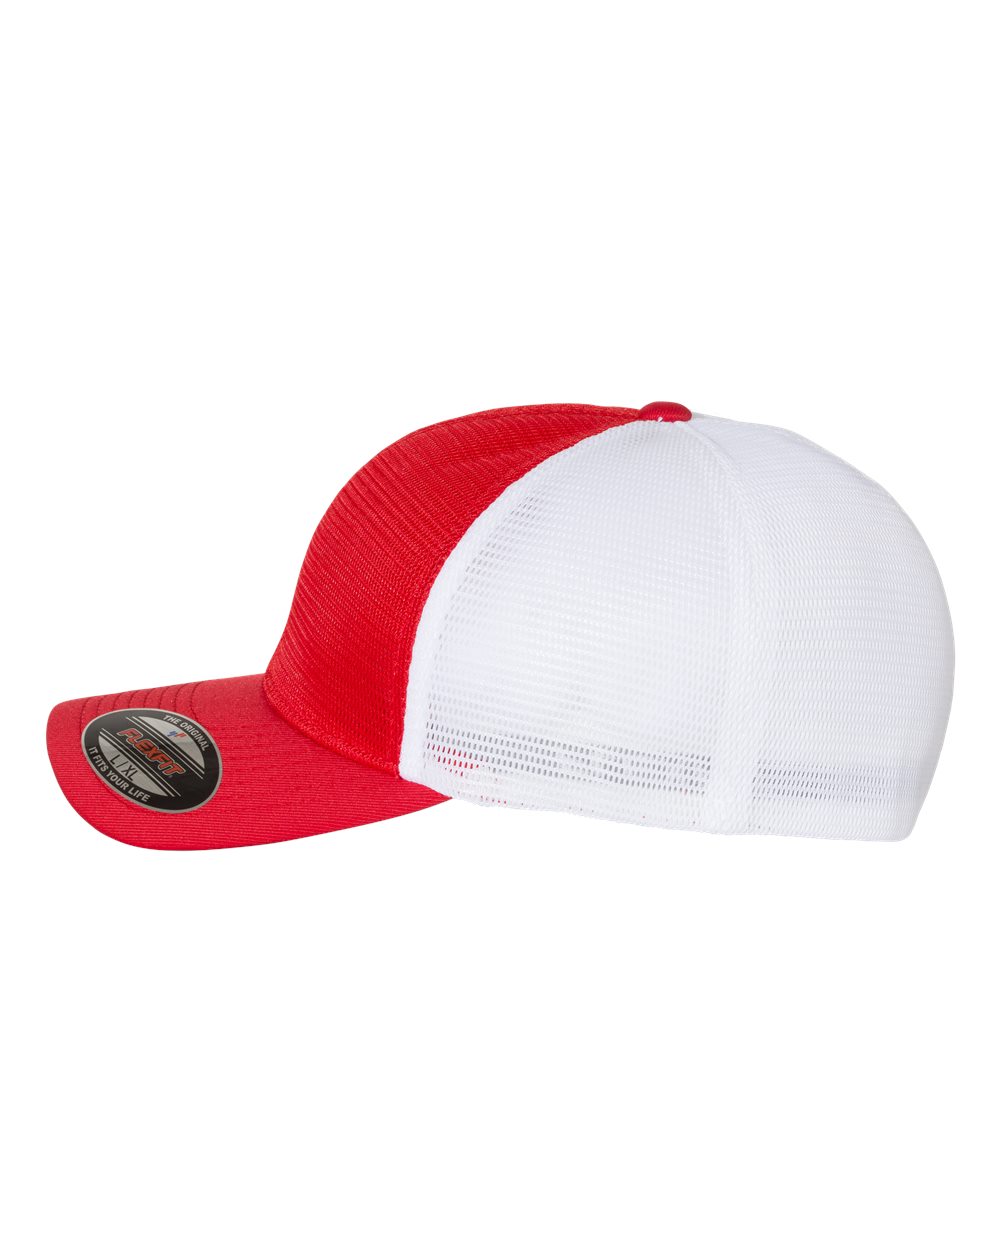 Red/White Trucker Hat